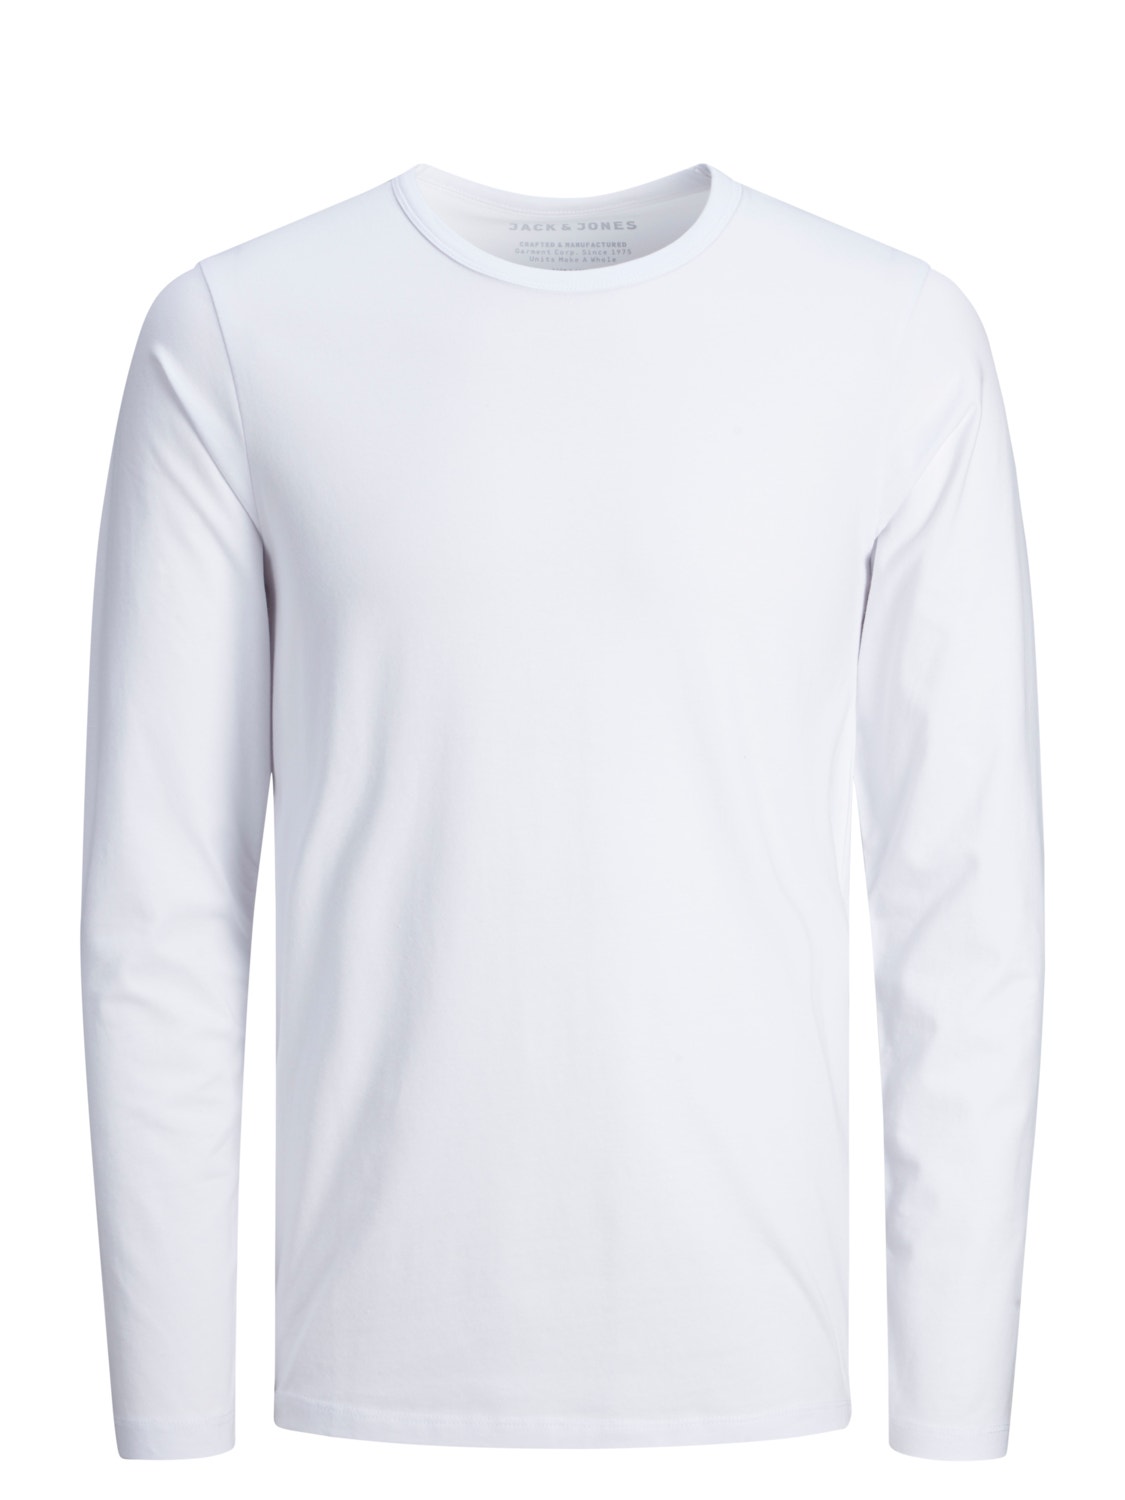 Jack & Jones Plain O-Neck T-shirt -White - 12059220